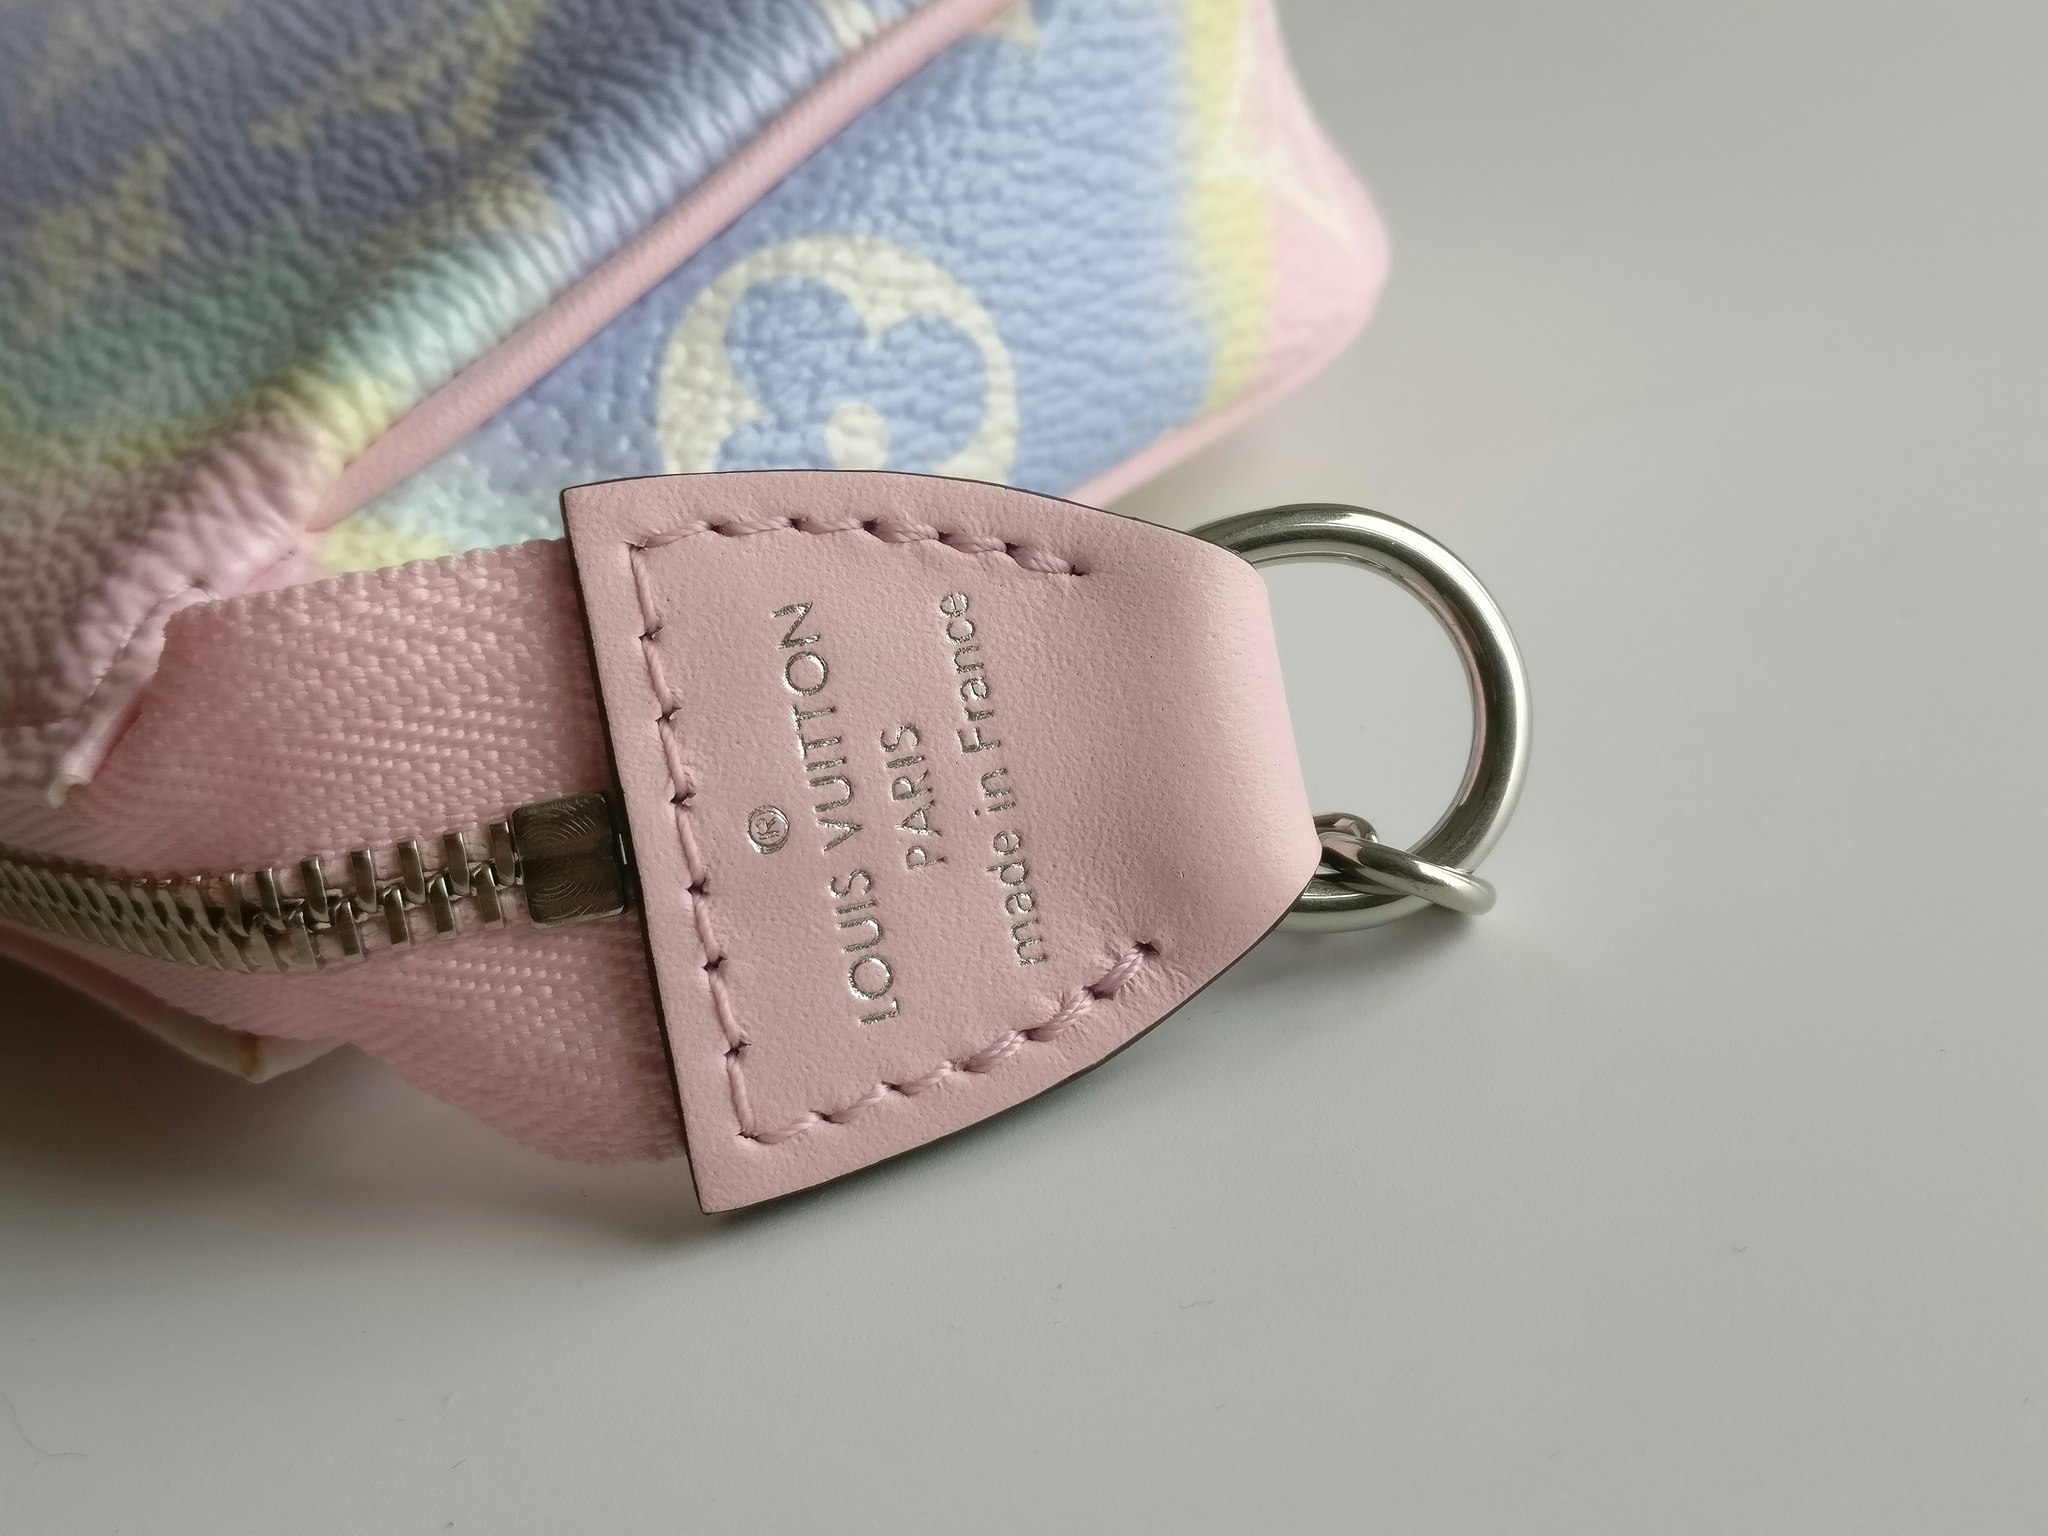 Louis Vuitton Mini Pochette Accessoires Escale Limited edition